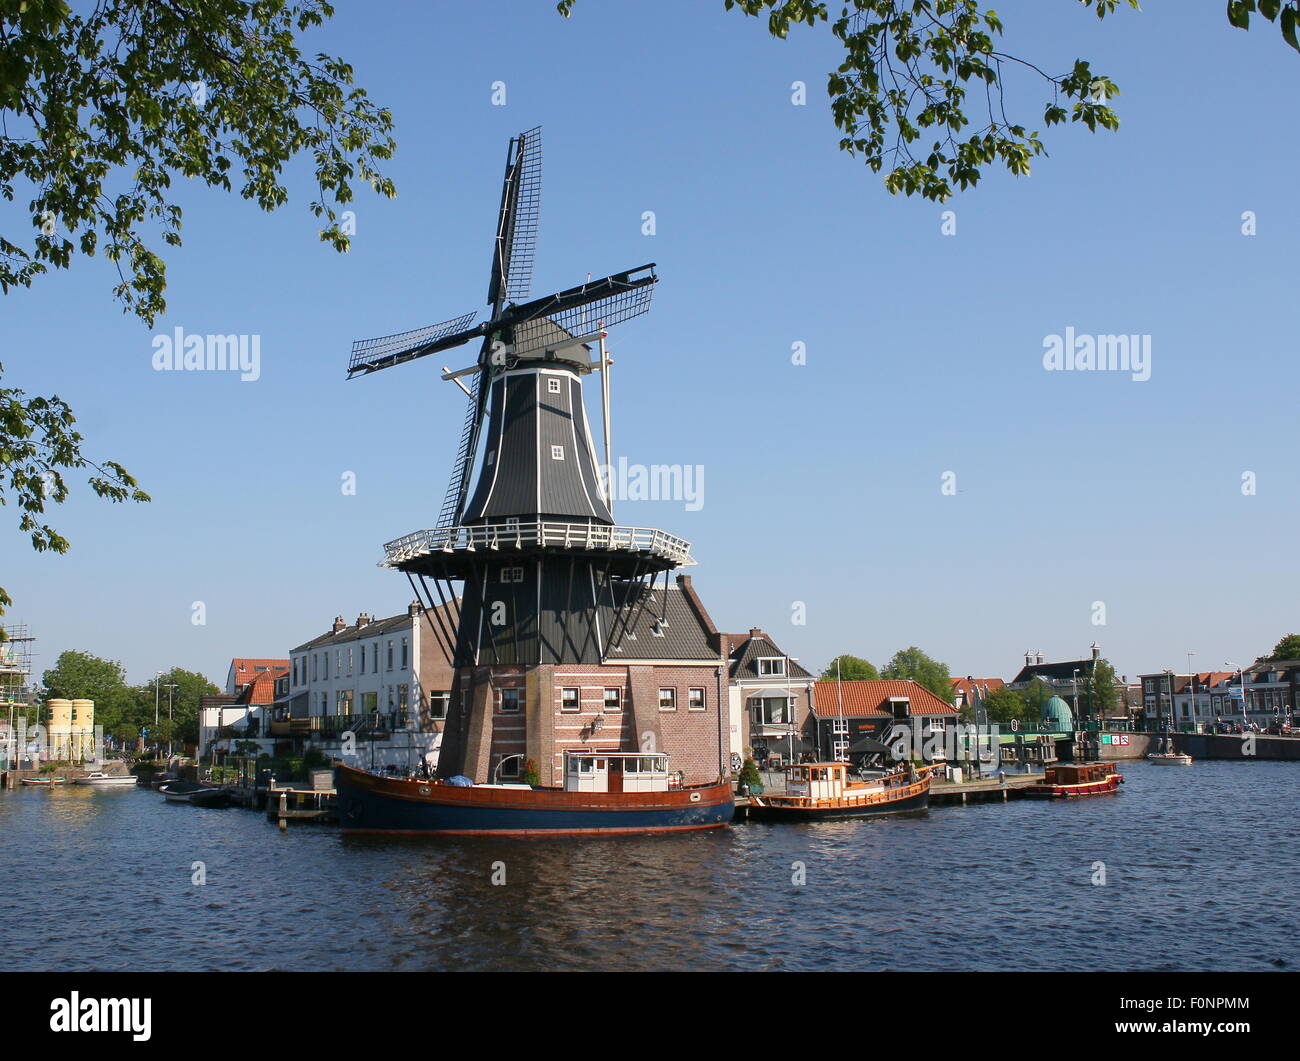 De Adriaan Windmühle in Haarlem, Niederlande. Im Jahr 2002 wieder aufgebaut. Die ursprüngliche Windmühle stammt aus dem Jahr 1779. Gesehen vom Fluss Spaarne Stockfoto